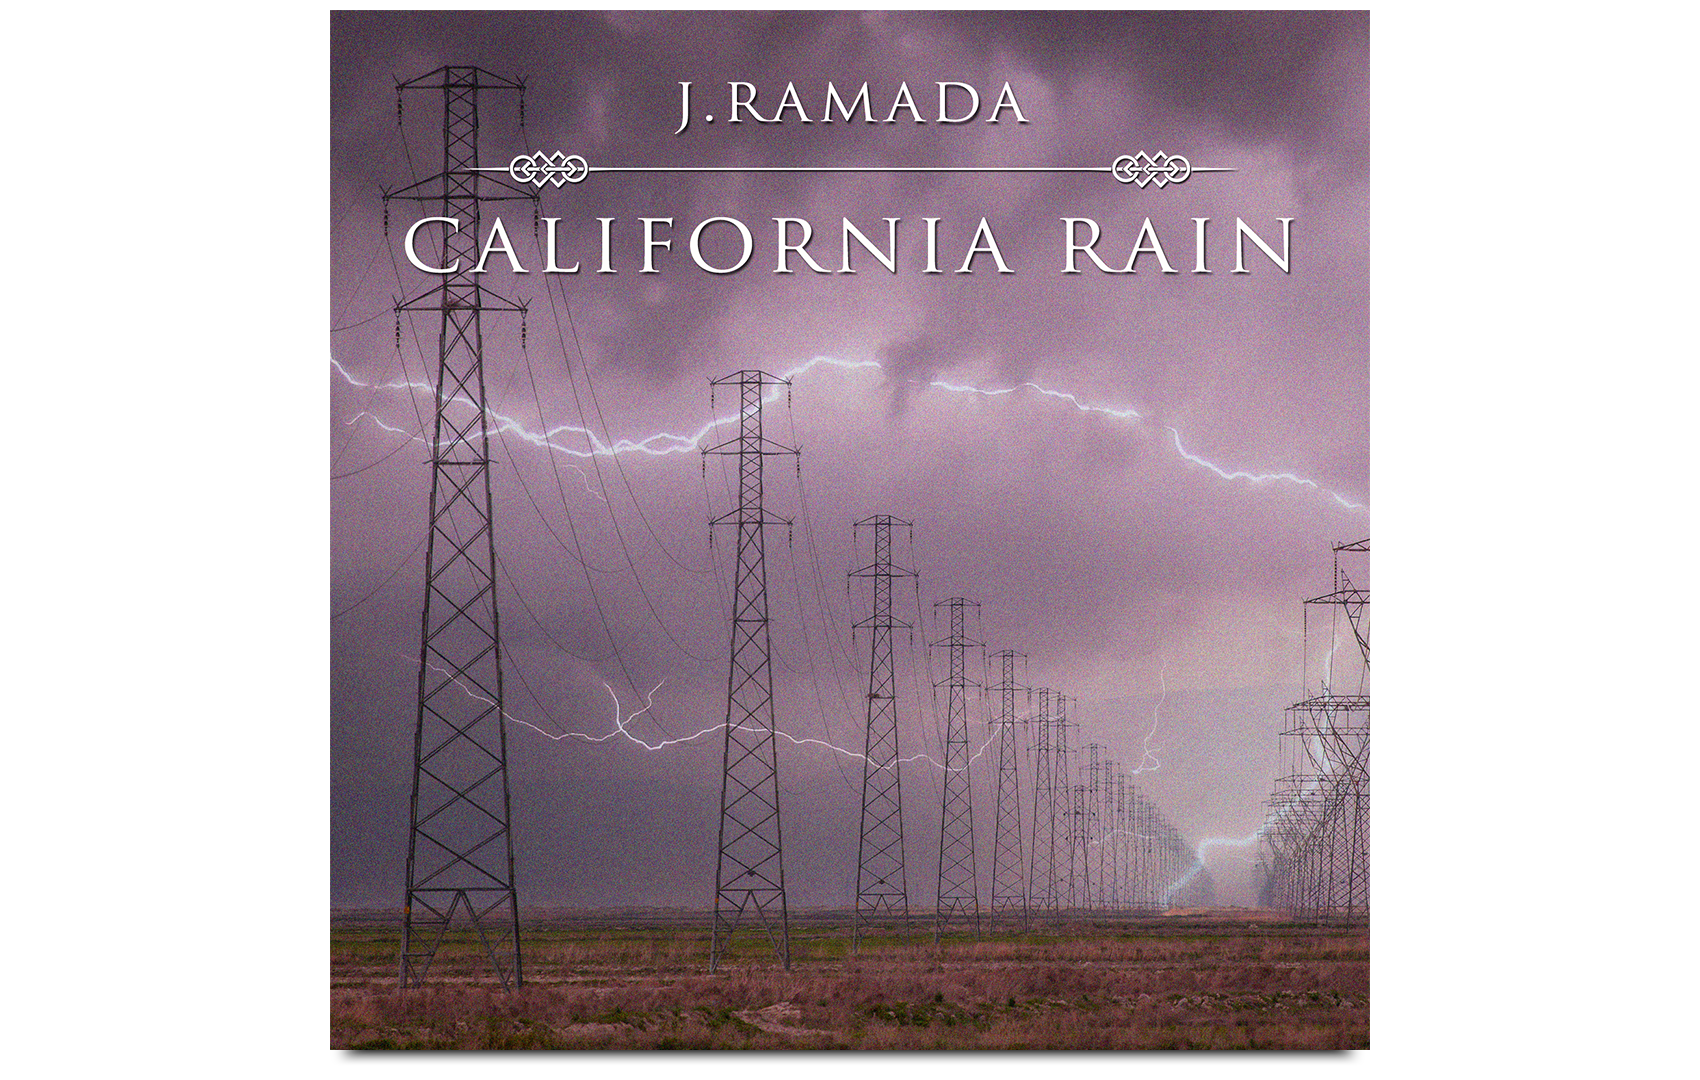 j.ramada california rain digital single design